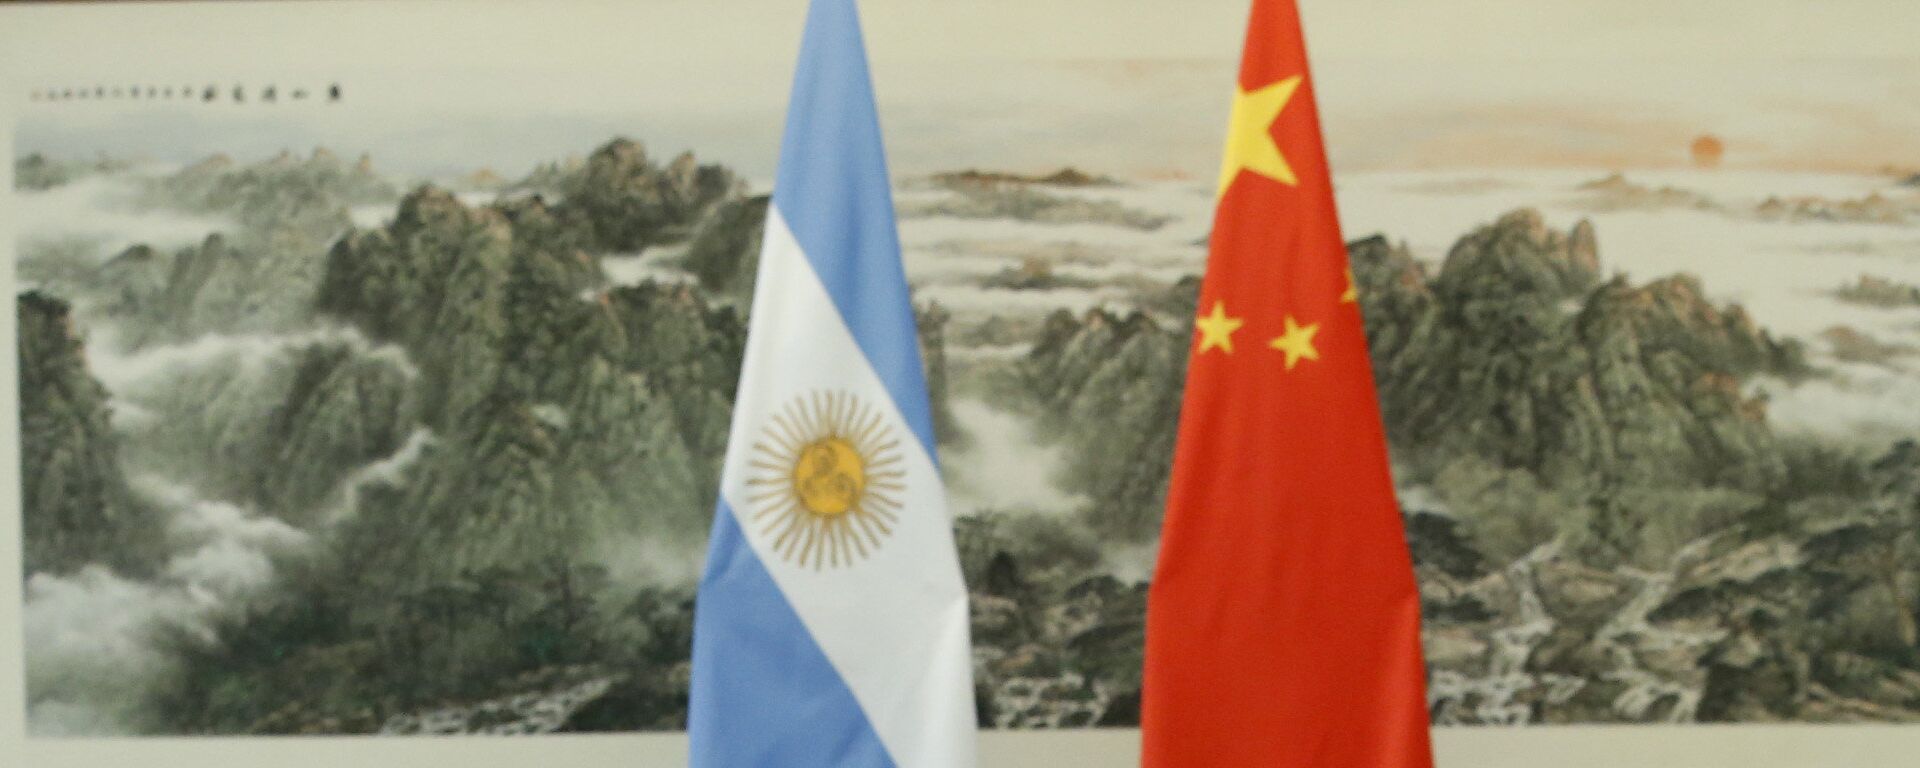 Banderas de Argentina y China - Sputnik Mundo, 1920, 23.12.2021